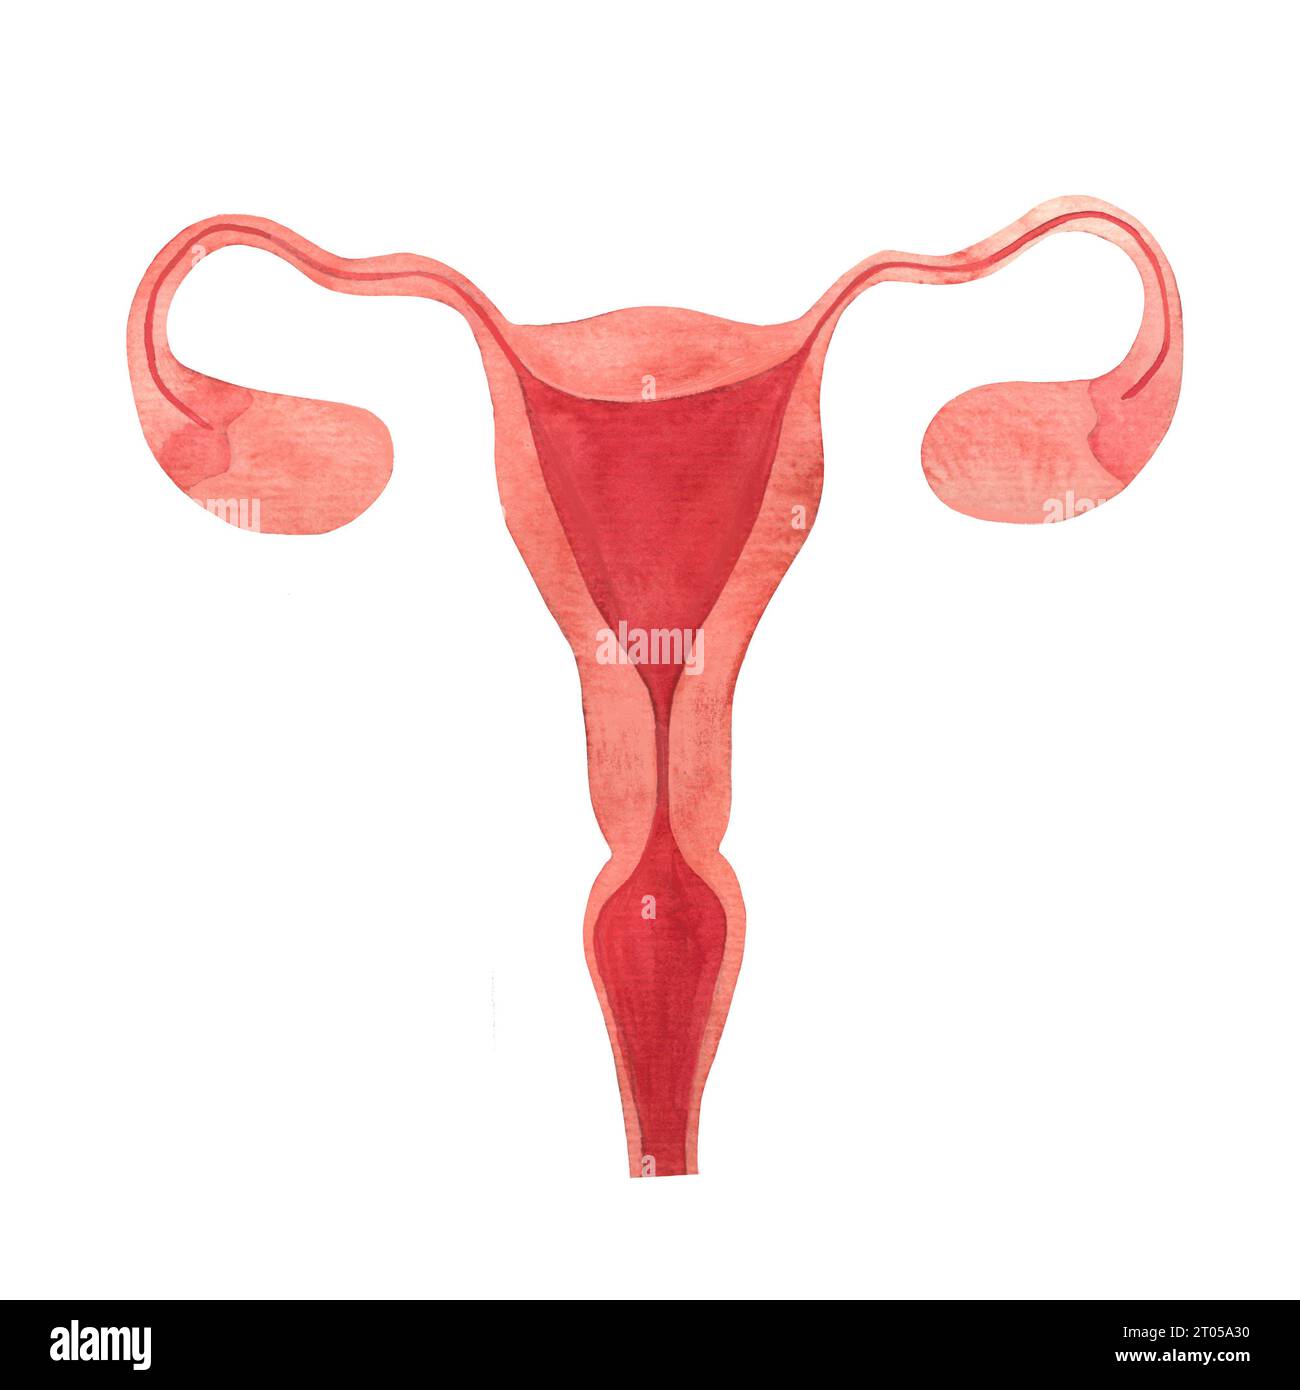 utérus, organe reproducteur féminin, ovaires, trompes de fallope, endomètre, canal cervical, col de l'utérus, aquarelle dessinée à la main illustration isolée Banque D'Images